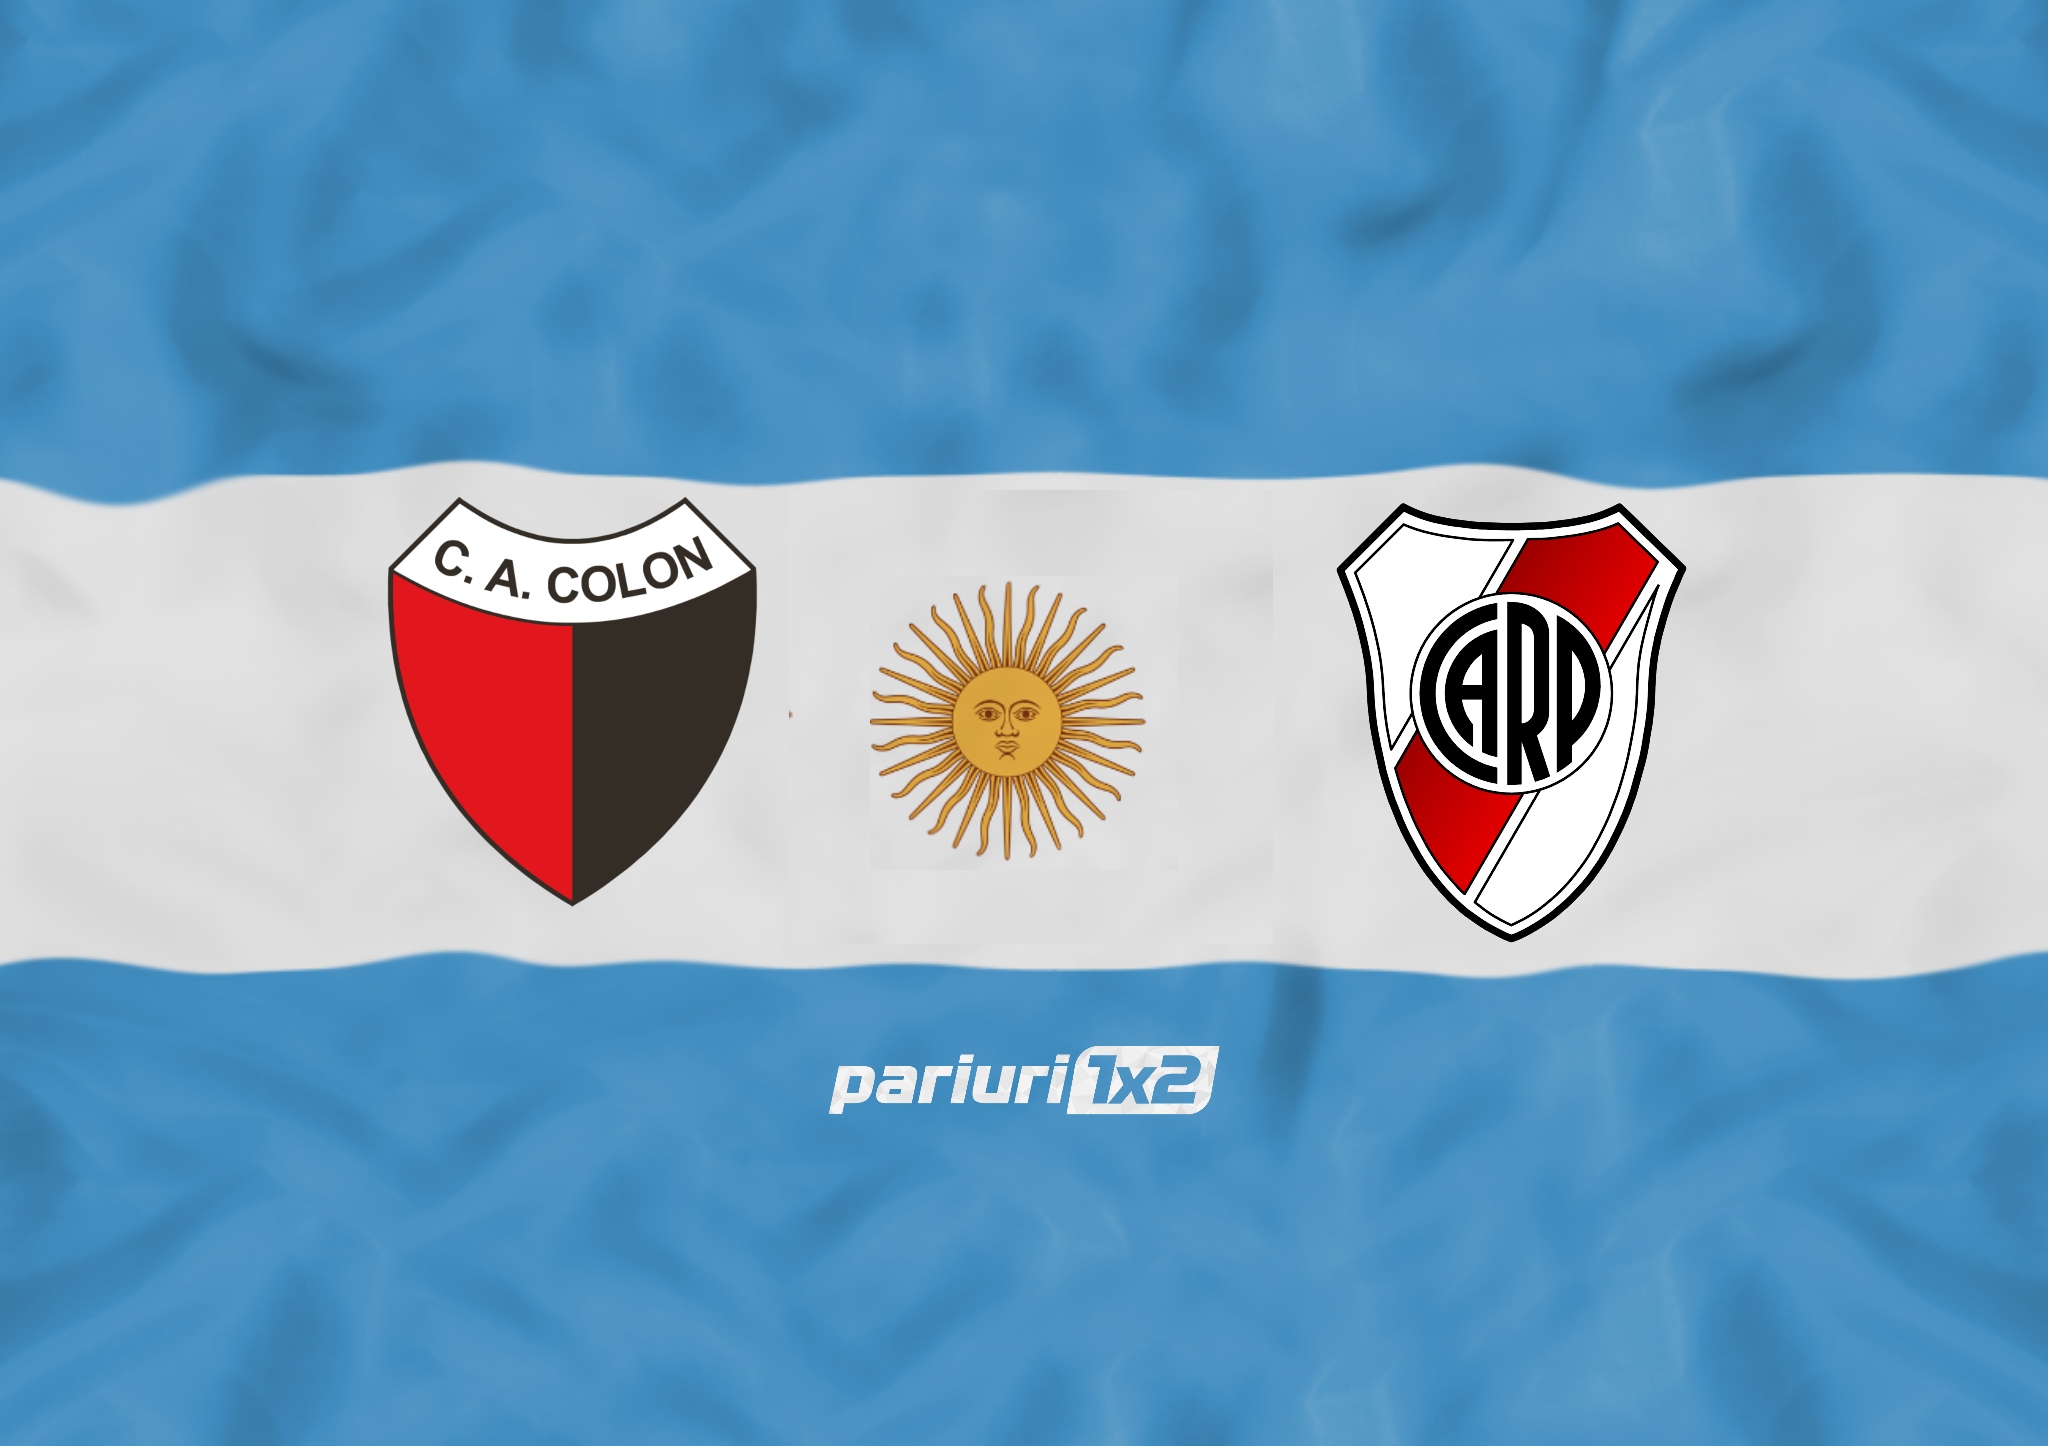 Ponturi fotbal » Colon – River Plate: Goluri si cornere la cote de 1.53 si 2.07! AICI, selectiile Pariuri1x2!